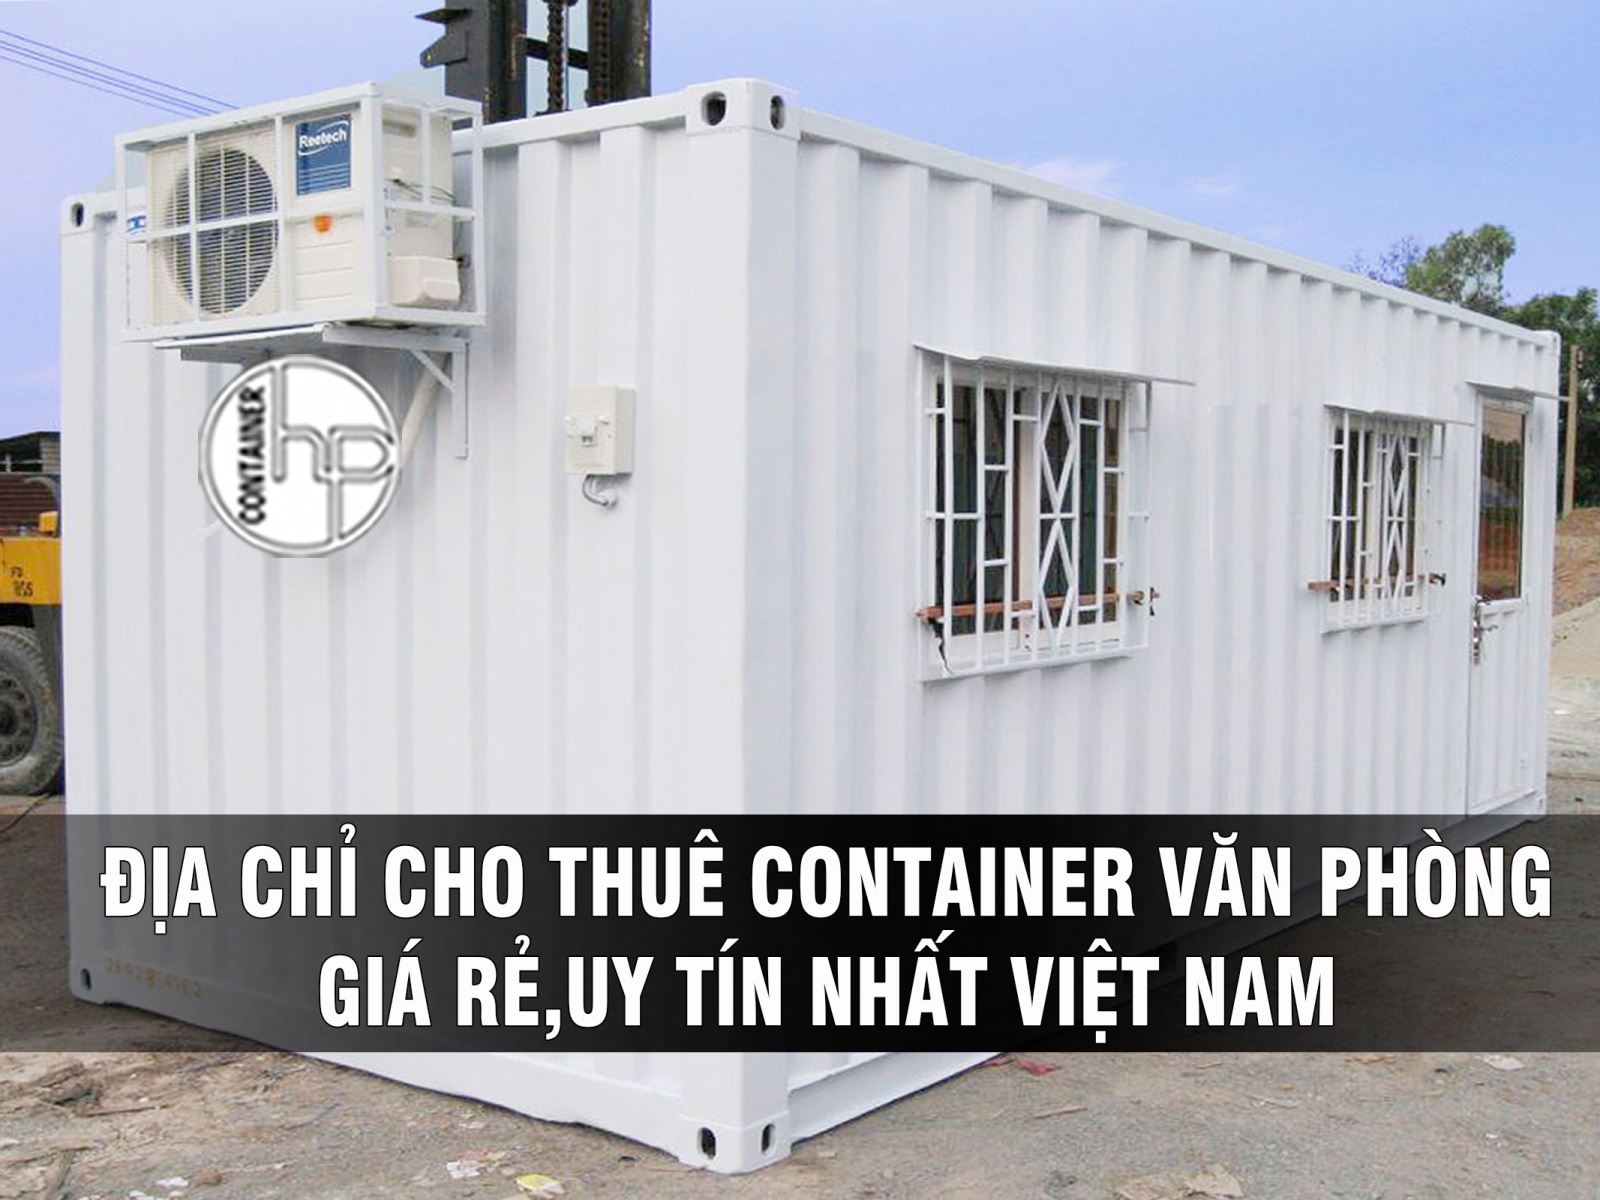 Chỉ nên thuê container lý do là gì bạn đã biết? 